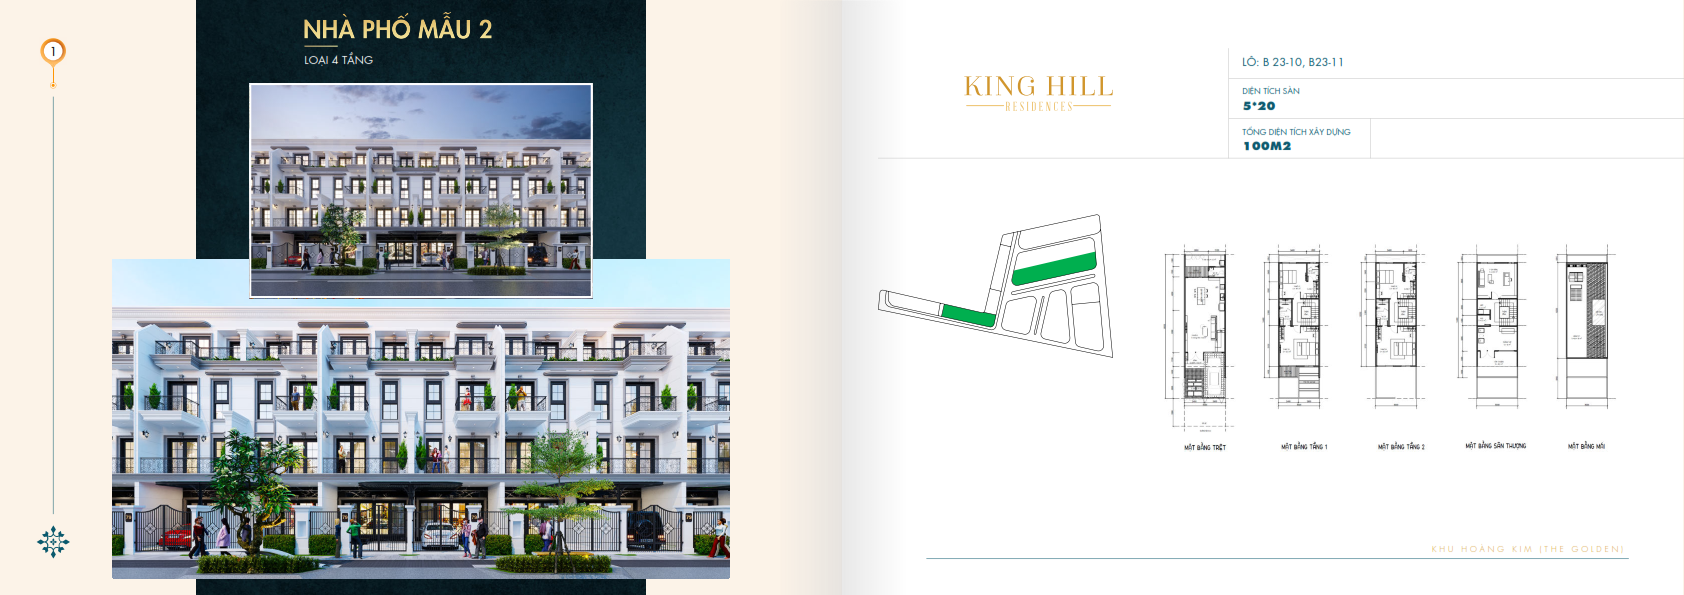 Nha pho mau 2 Du an Khu dân cư King Hill - King Hill Residences